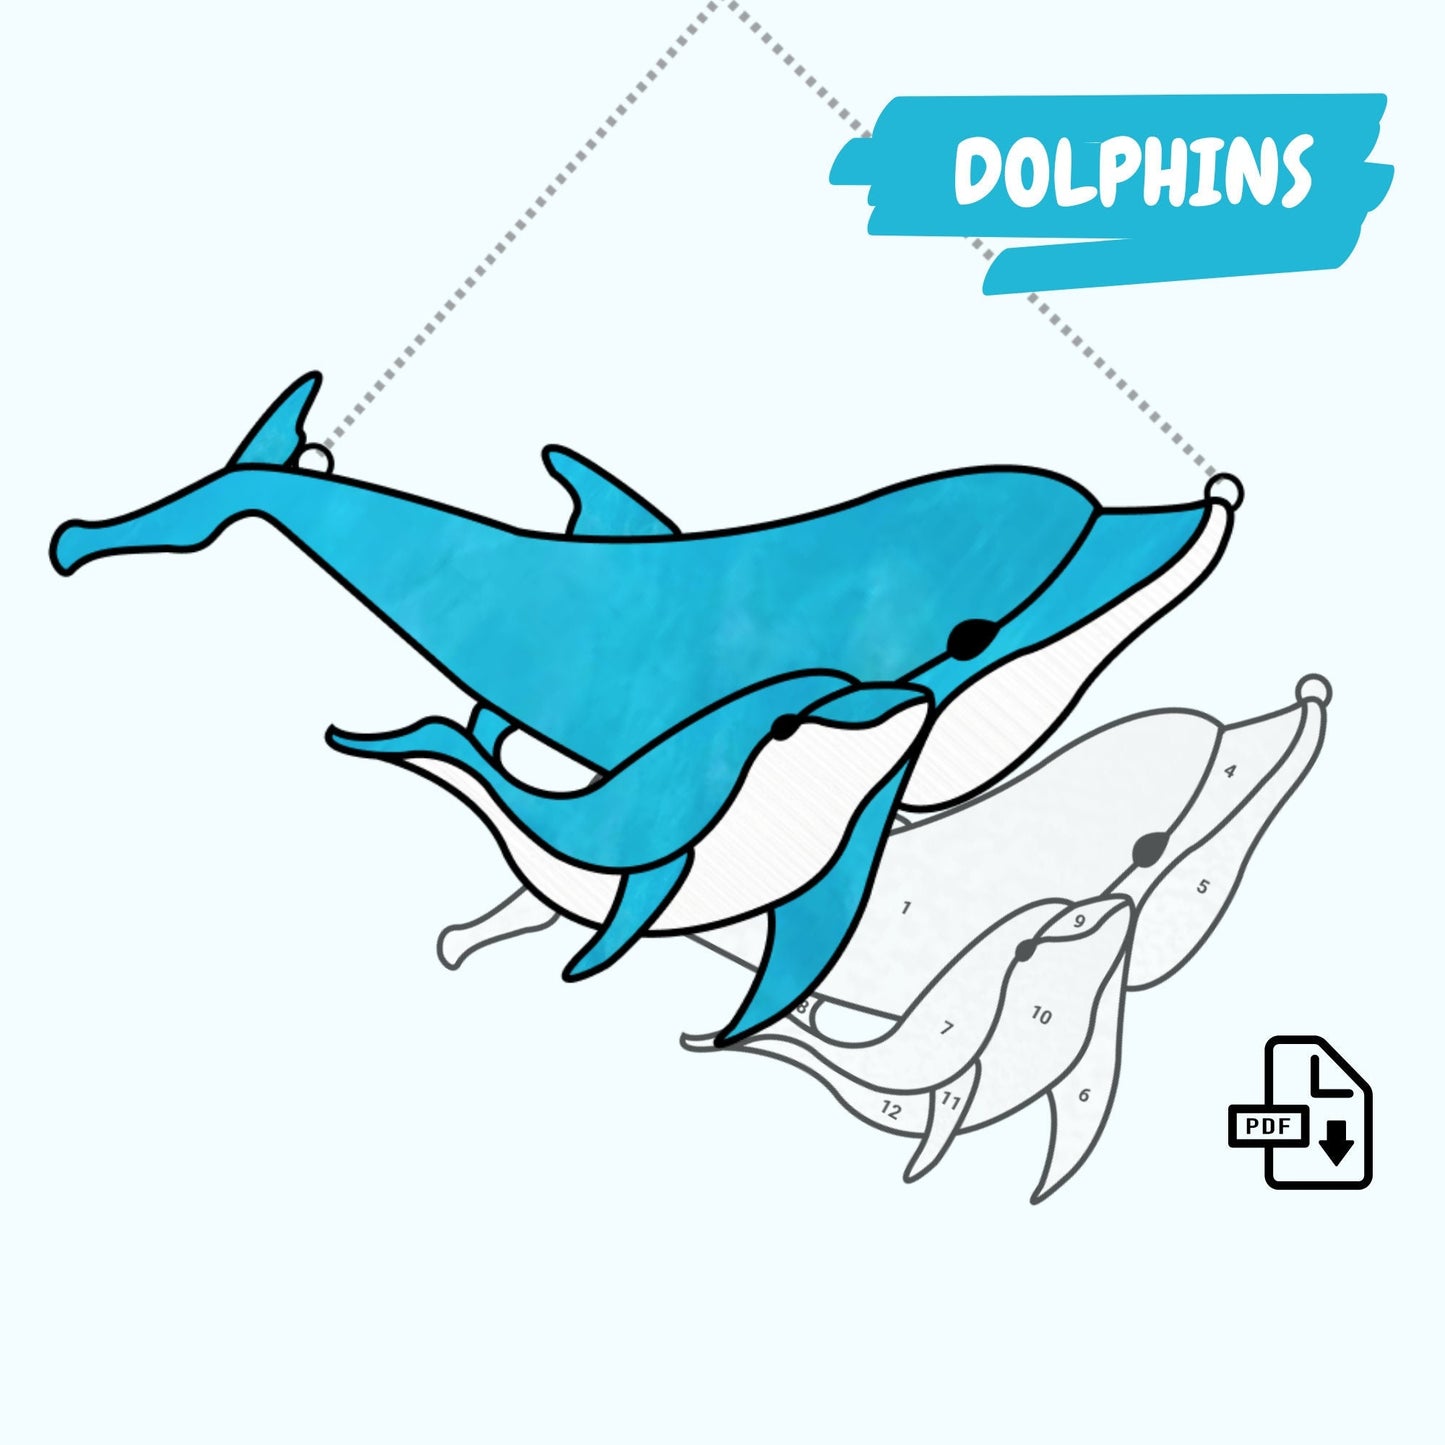 Buntglasmuster mit Delfinen • Muster zum Aufhängen von Delfinen am Fenster